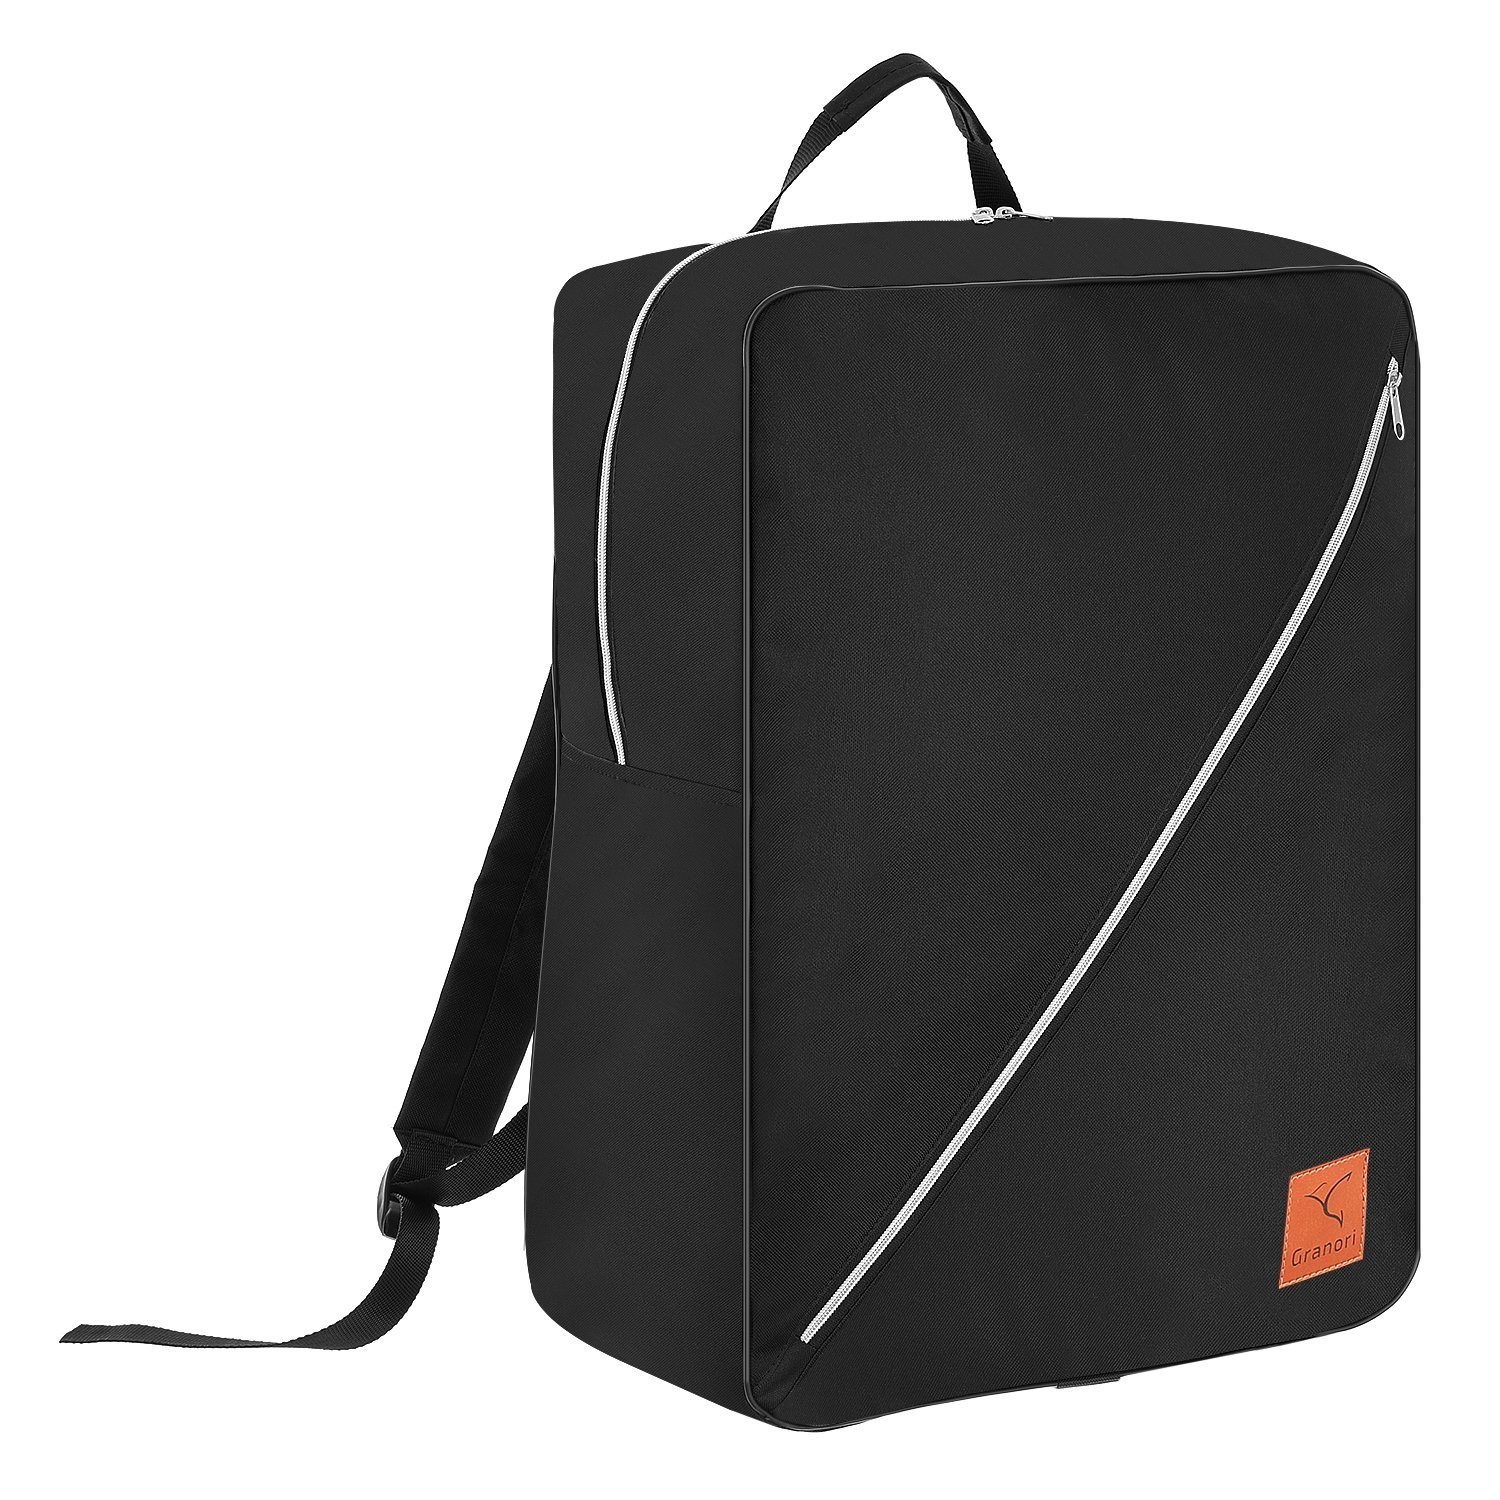 Granori Reiserucksack 55x40x20 cm XL Handgepäck gemäß IATA Empfehlung – leicht & viel Platz, über 40l Fassungsvermögen, mit abschließbarem Hauptfach Schwarz